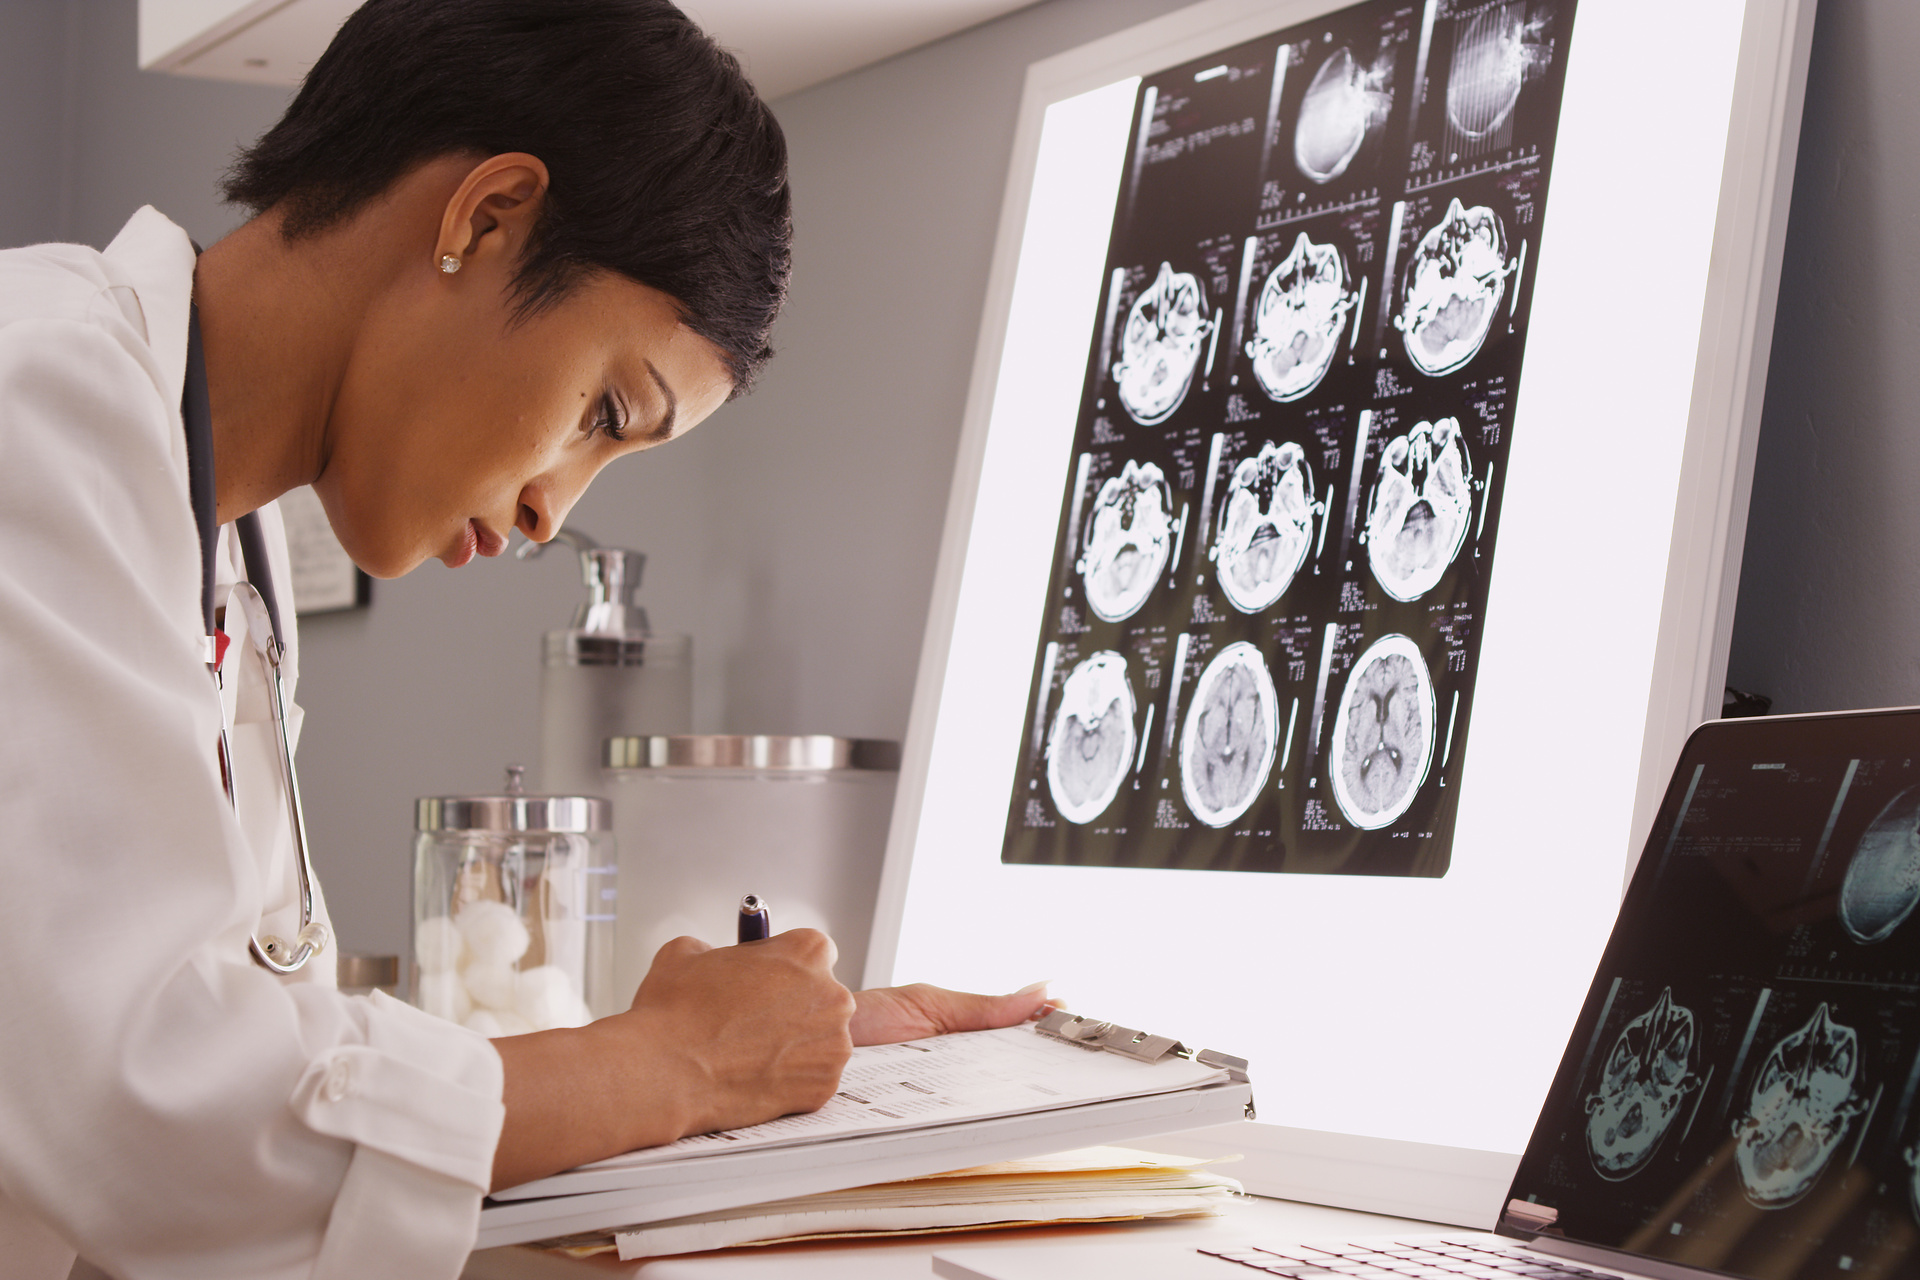 Black female doctor reading imaging scans